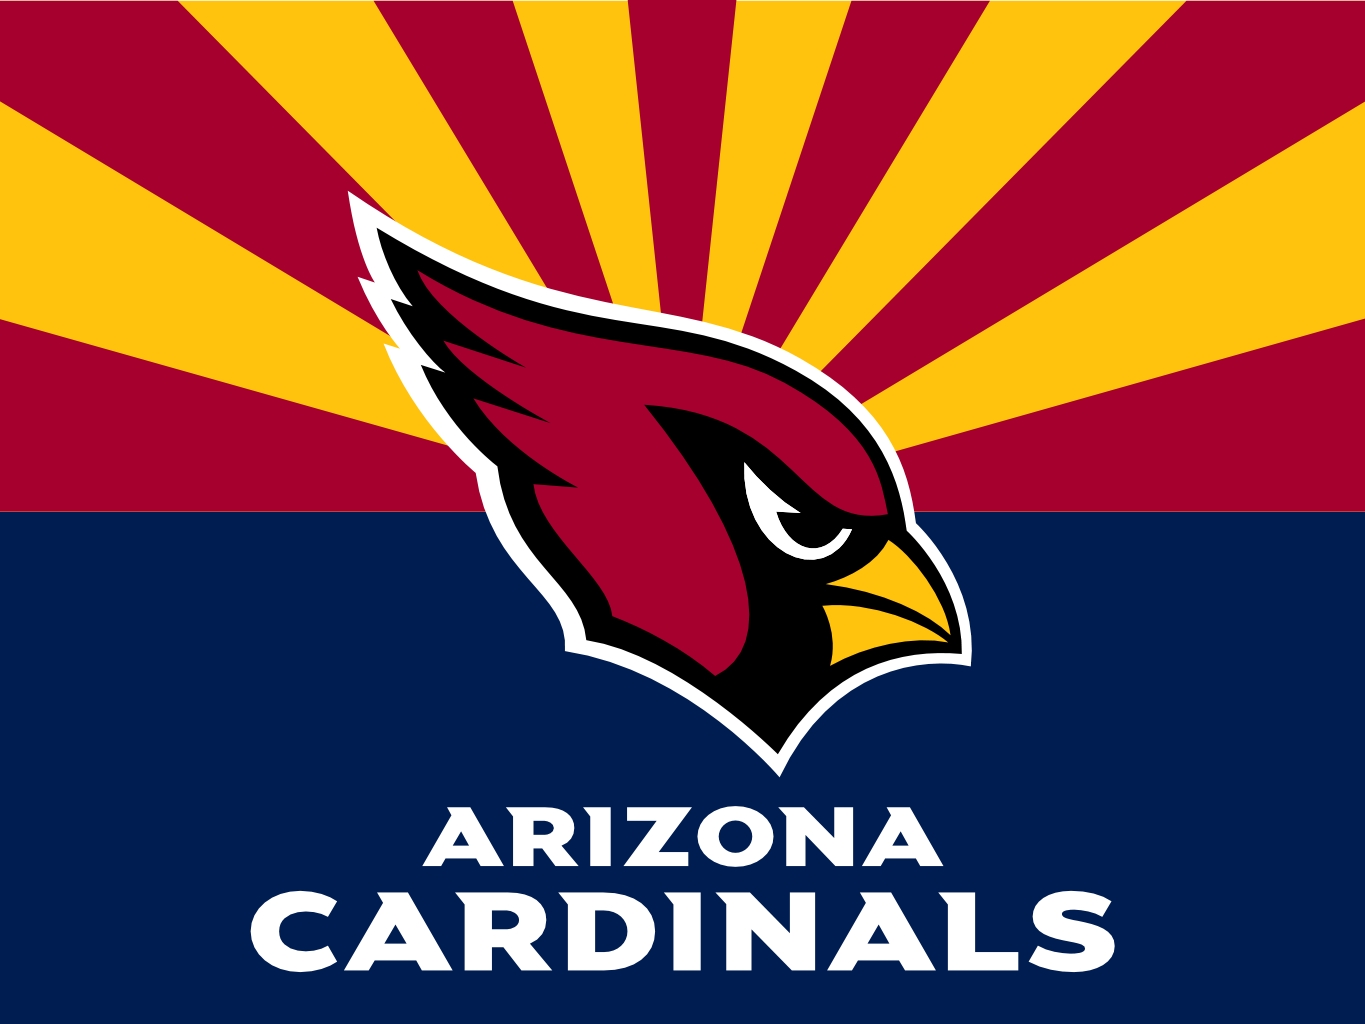 Arizona Cardinals Archives - CFBHuddle.com